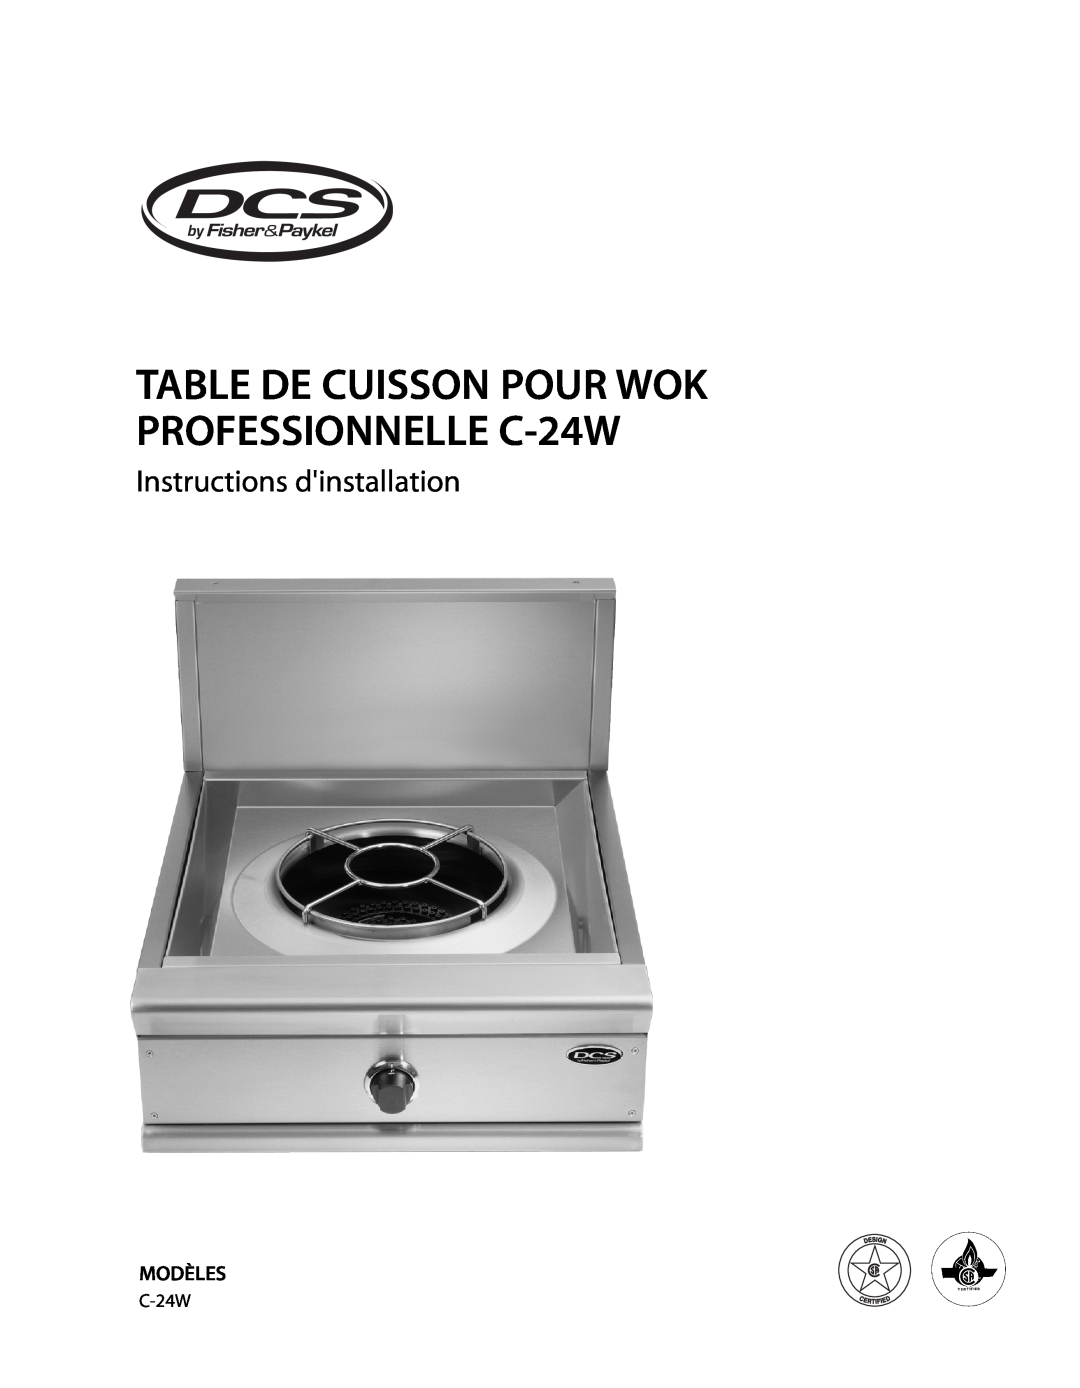 DCS installation instructions Instructions dinstallation, Modèles, TABLE DE CUISSON POUR WOK PROFESSIONNELLE C-24W 